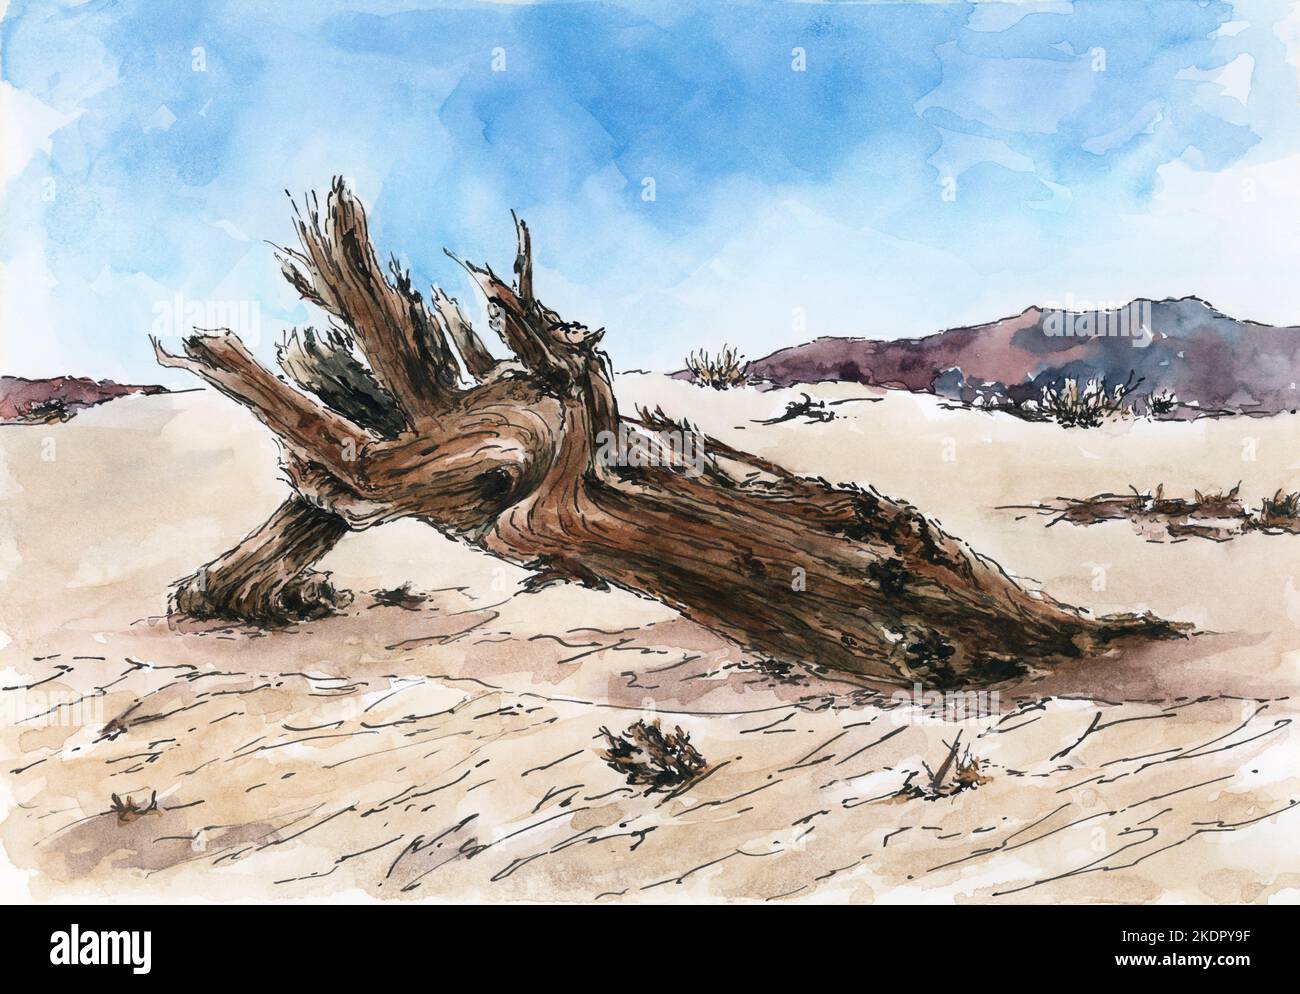 Deserto con tronco di albero morto. Inchiostro e acquerello sulla carta. Foto Stock